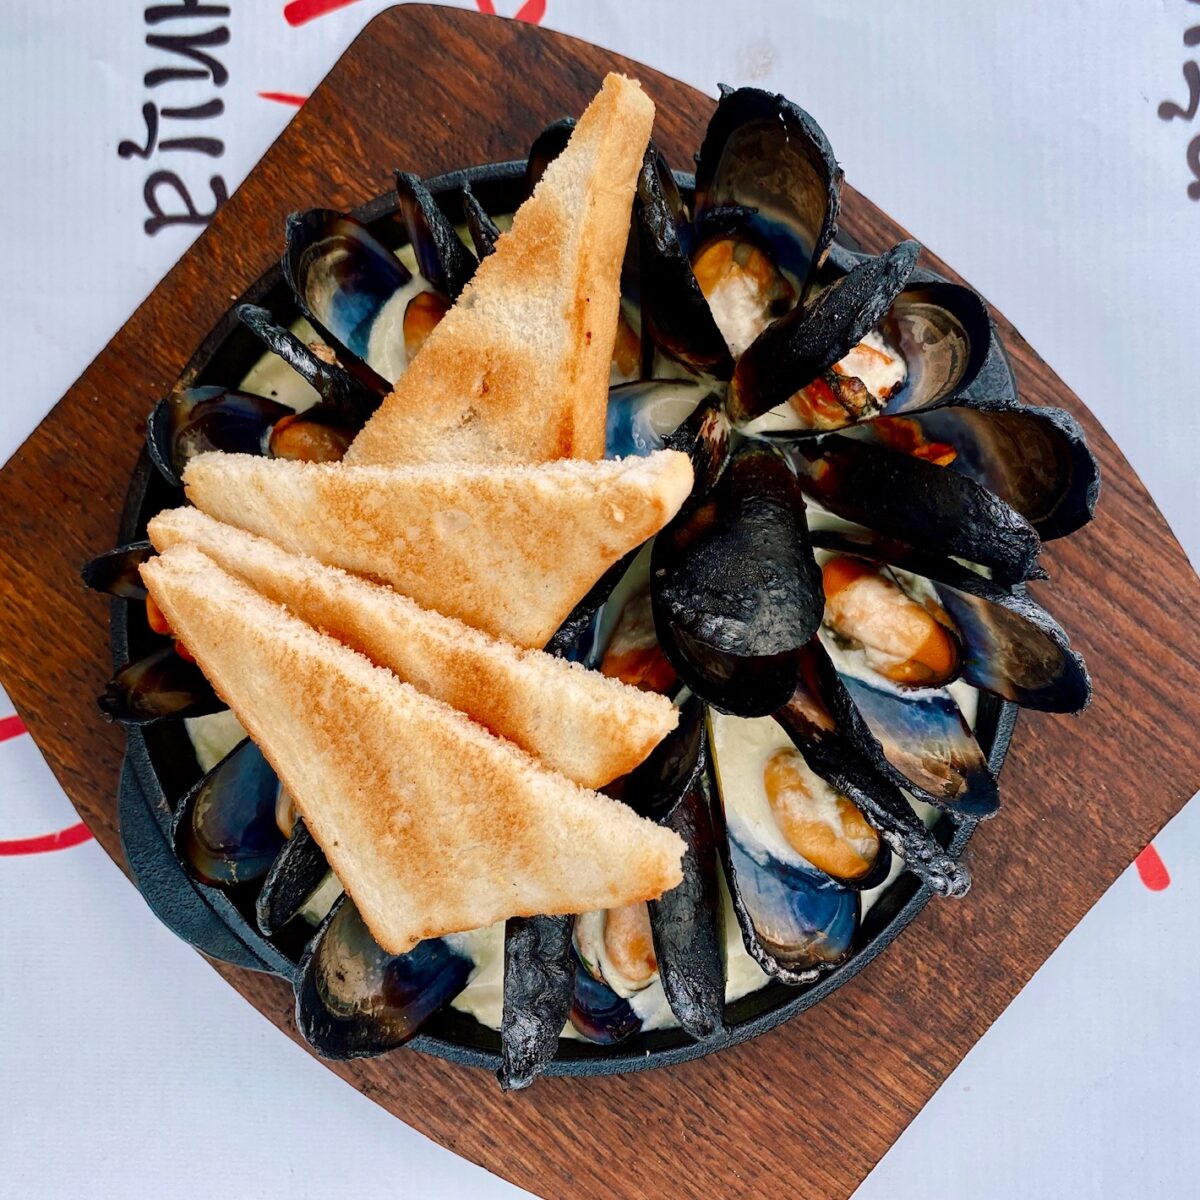 Mussels in cream sauce • Melnitsa restaurant, Kharkiv